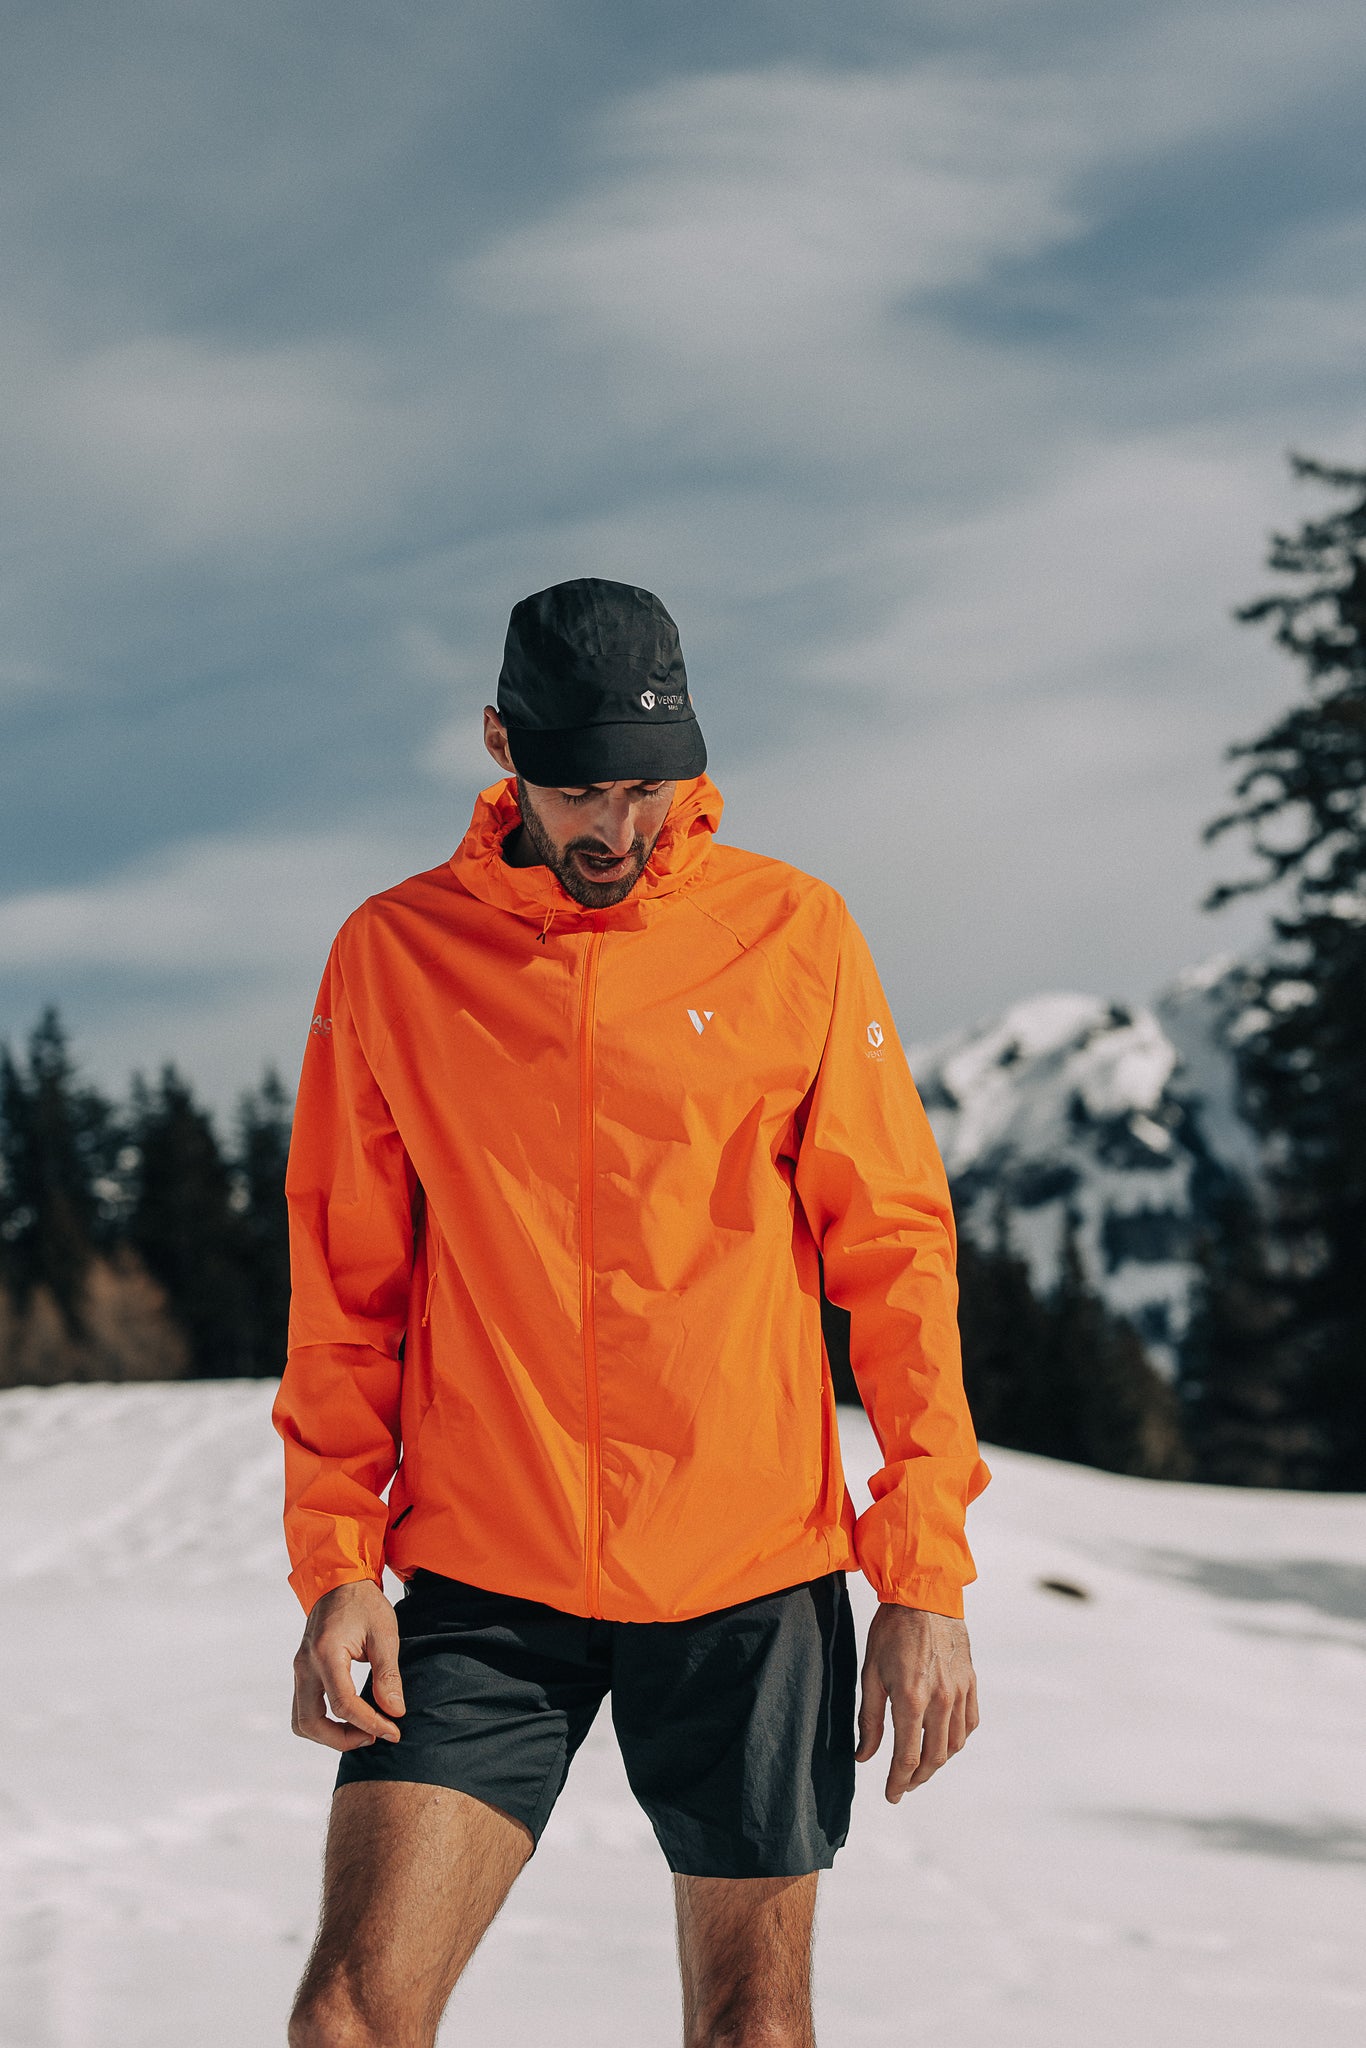 Ultralite - Men's Running Jacket - Neon Orange